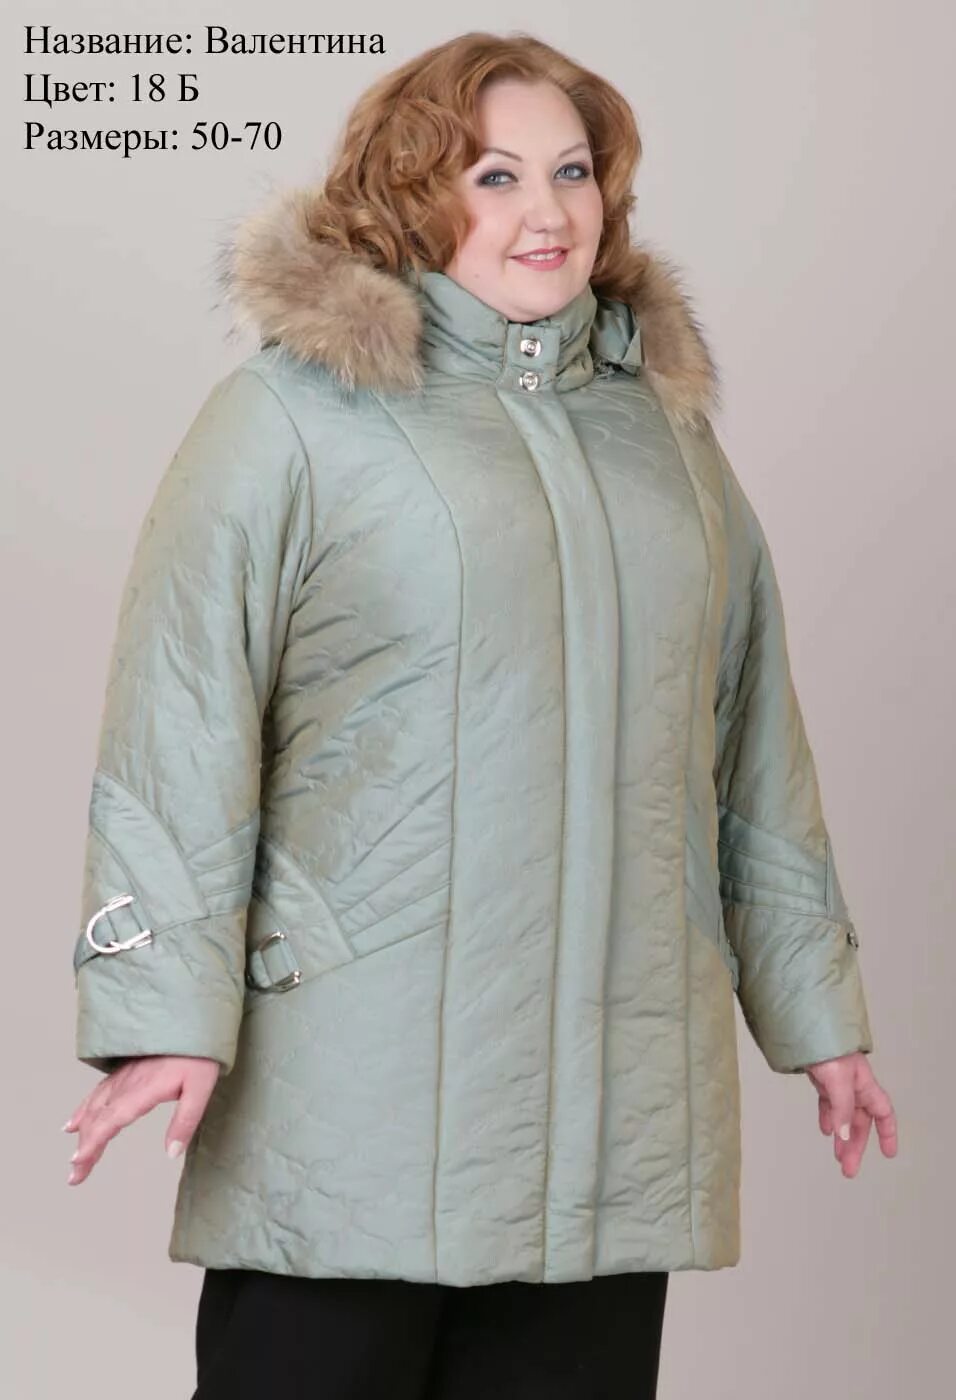 Авито купить куртку 54 размера женскую. Mishel утепленная куртка 56 размер. Куртки женские для пожилых. Теплые женские куртки больших размеров. Зимние куртки женские больших размеров.